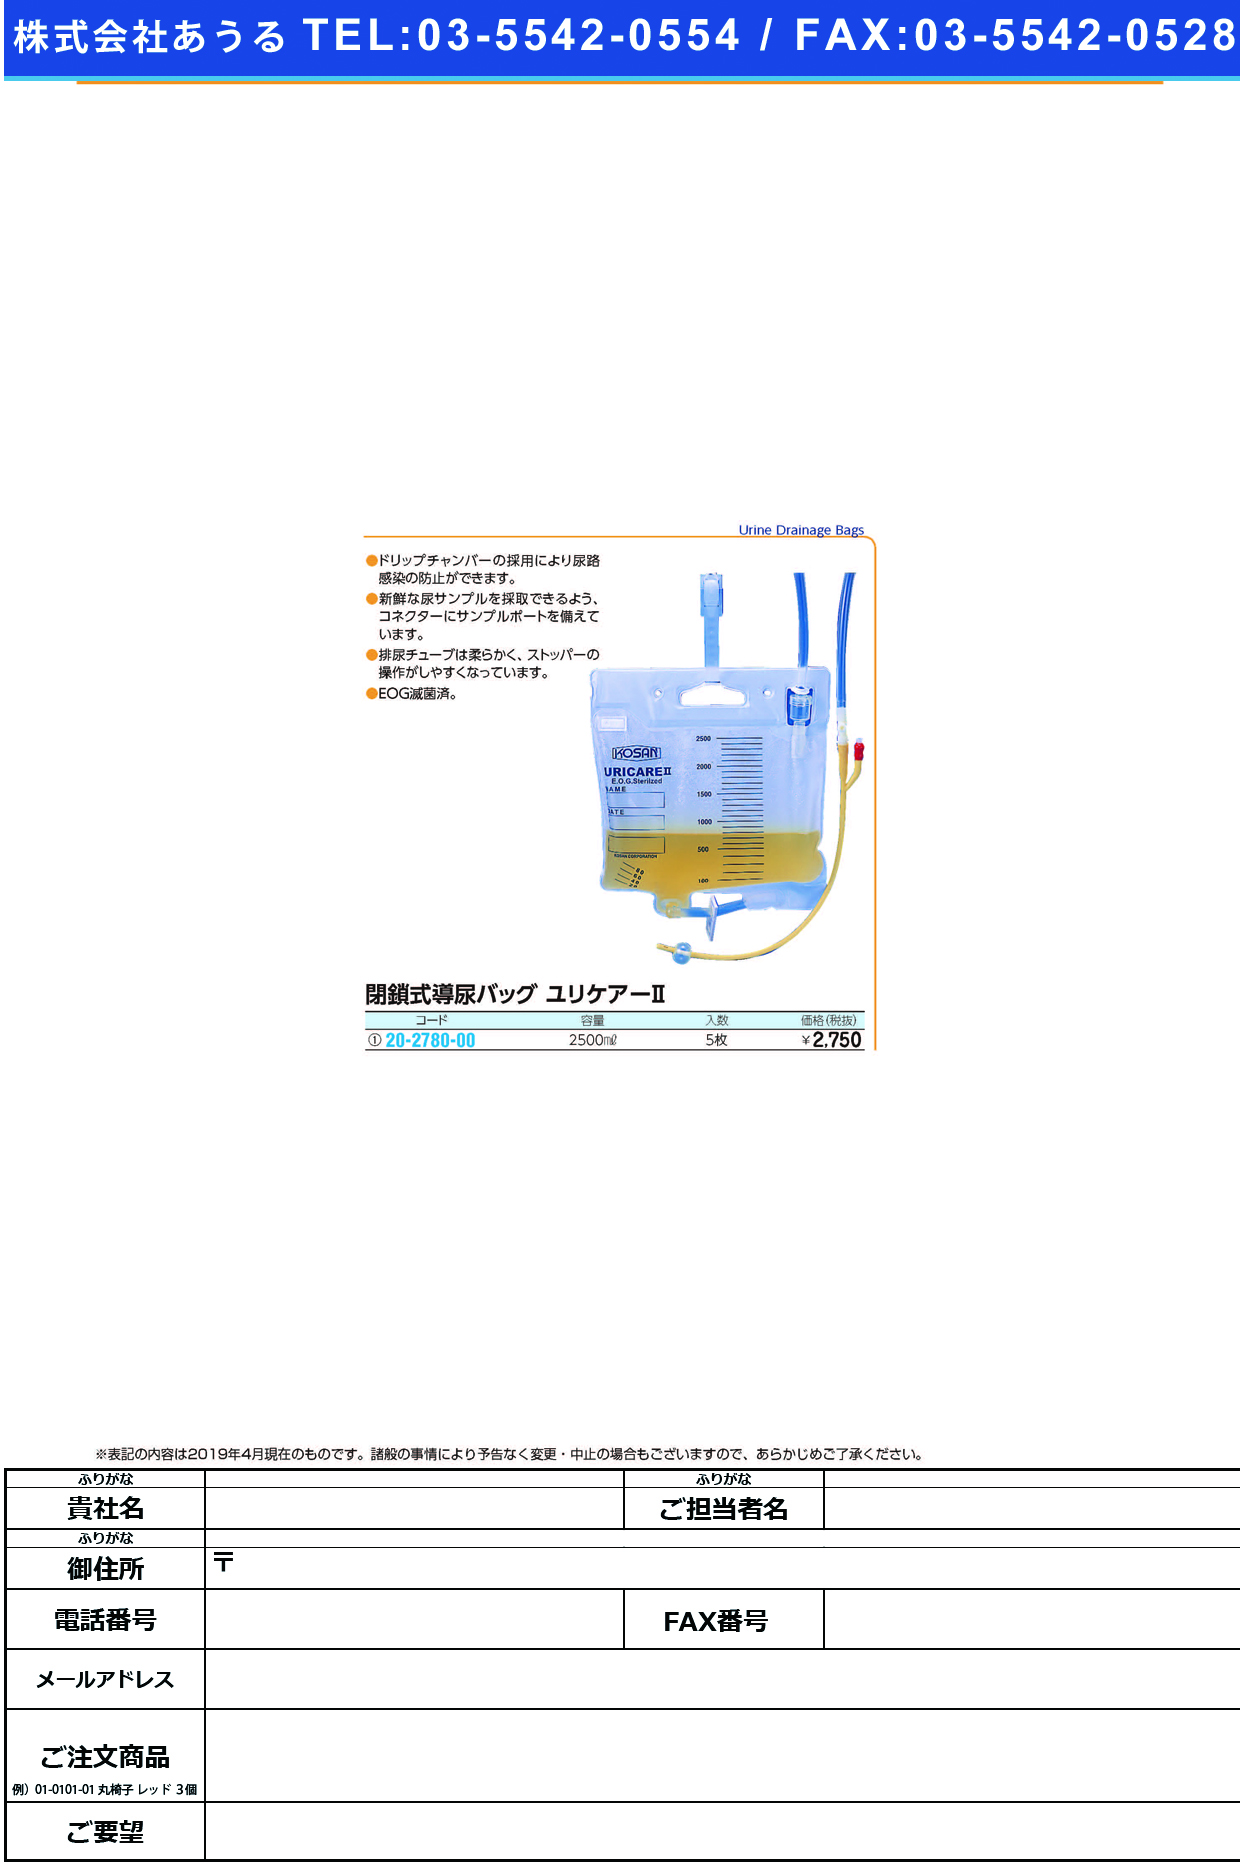 (20-2780-00)閉鎖式導尿バッグユリケア? 2500ML(5ﾏｲｲﾘ) ﾍｲｻｼｷﾆｮｳﾄﾞｳﾊﾞｯｸﾞﾕﾘｹｱ【1箱単位】【2019年カタログ商品】